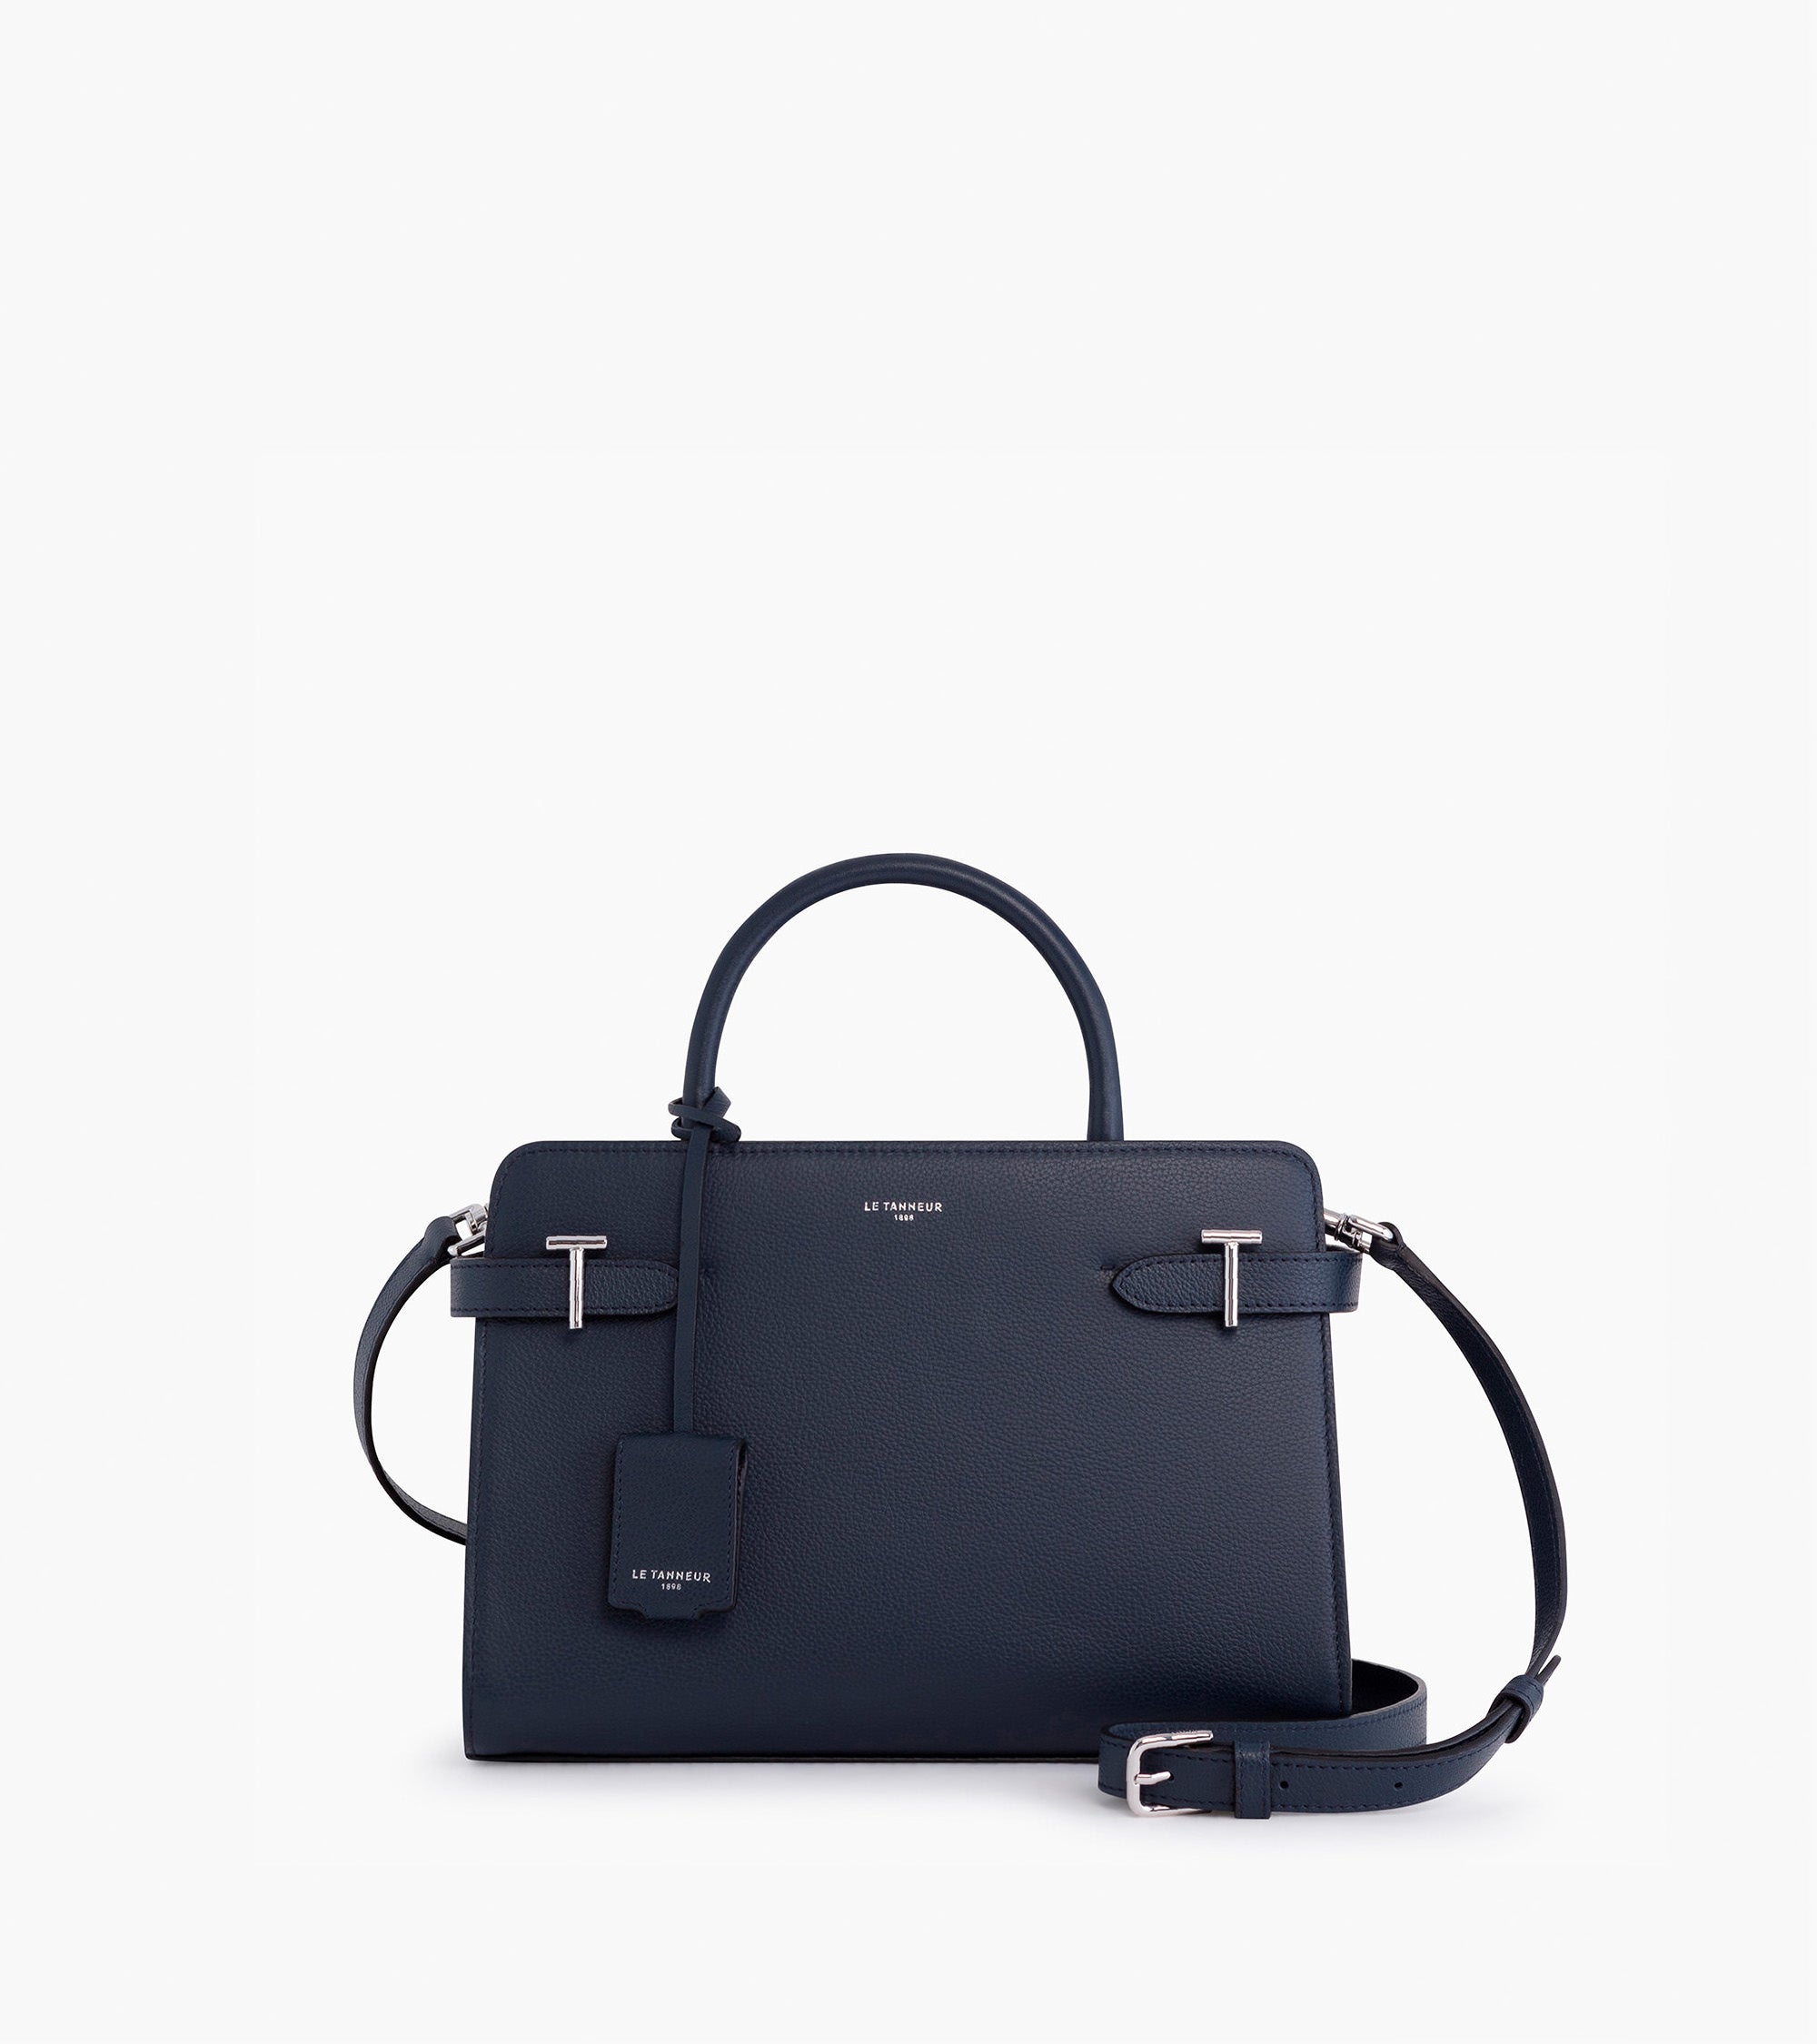 Emilie medium handbag in grained leather